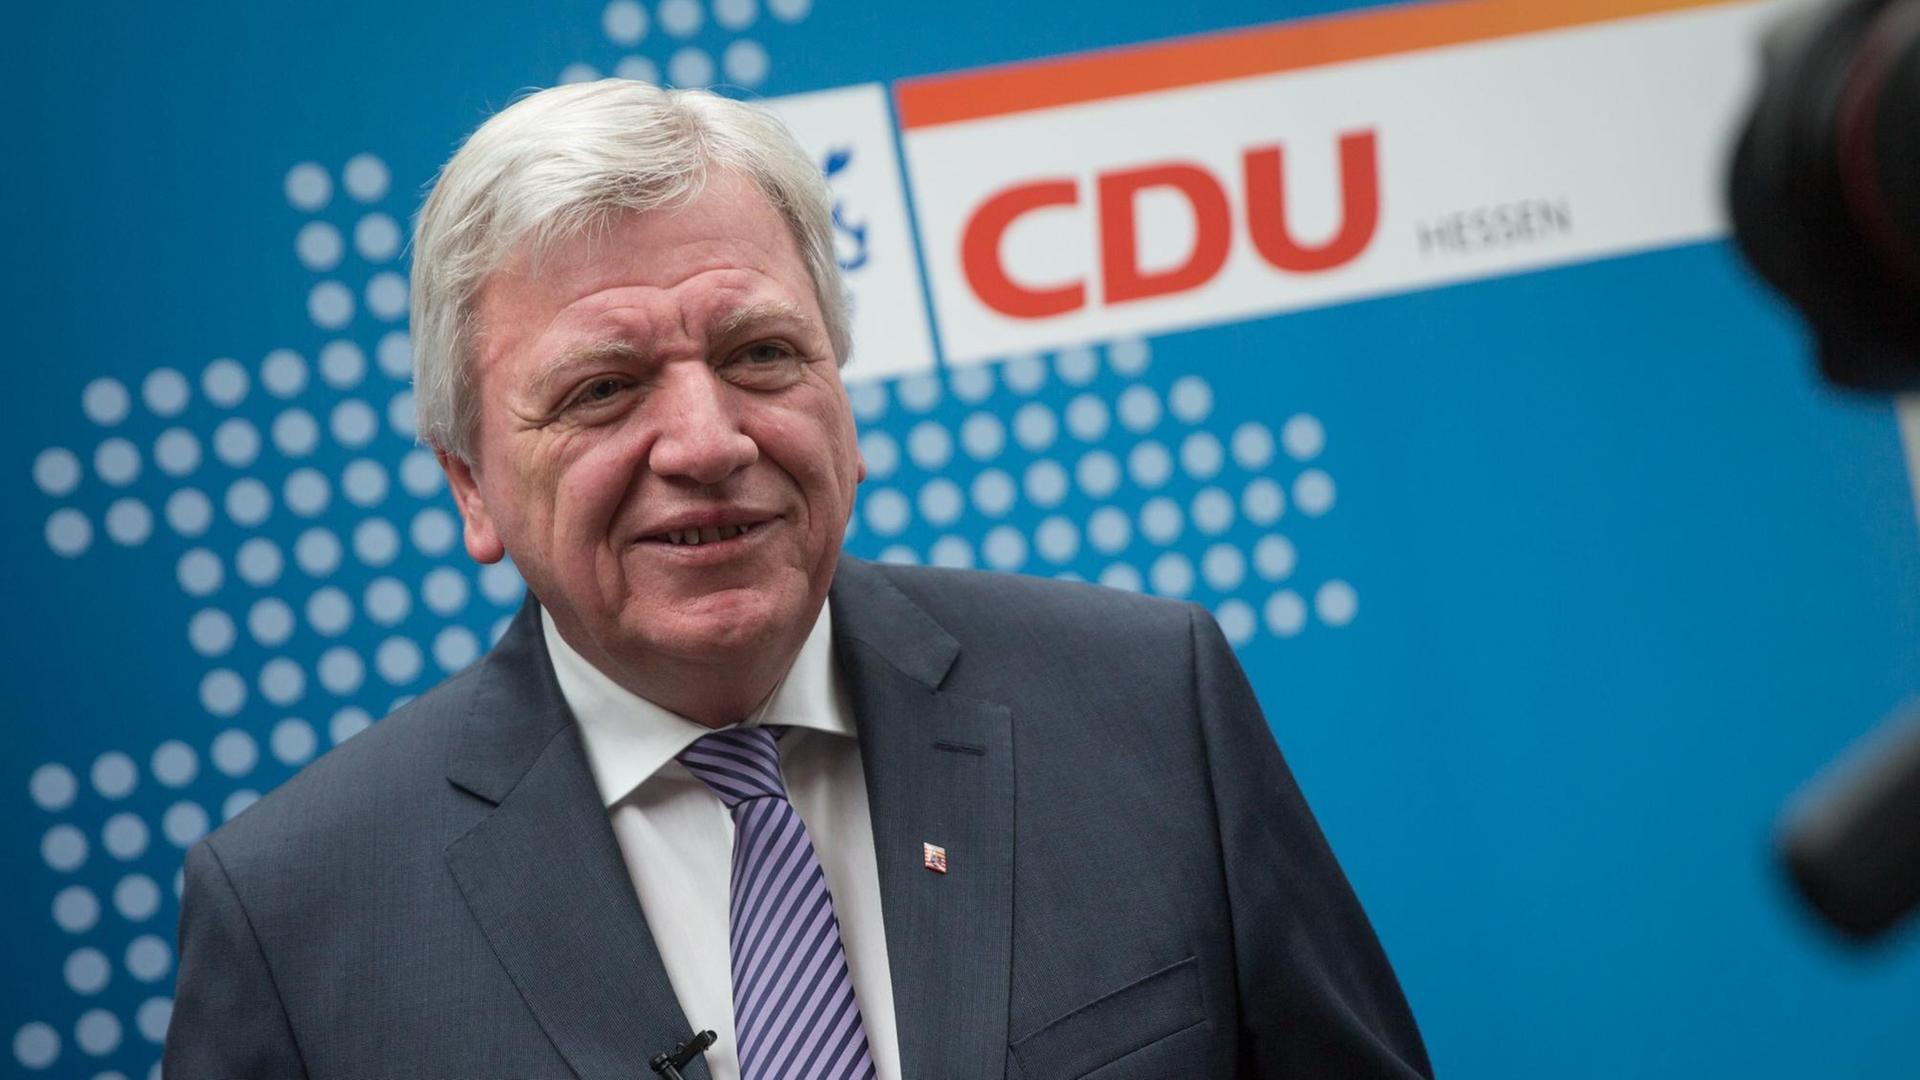 Der hessische Ministerpräsident und CDU-Landesvorsitzende Volker Bouffier am 18.06.2016 in Darmstadt (Hessen) zu Beginn des Landesparteitages der CDU